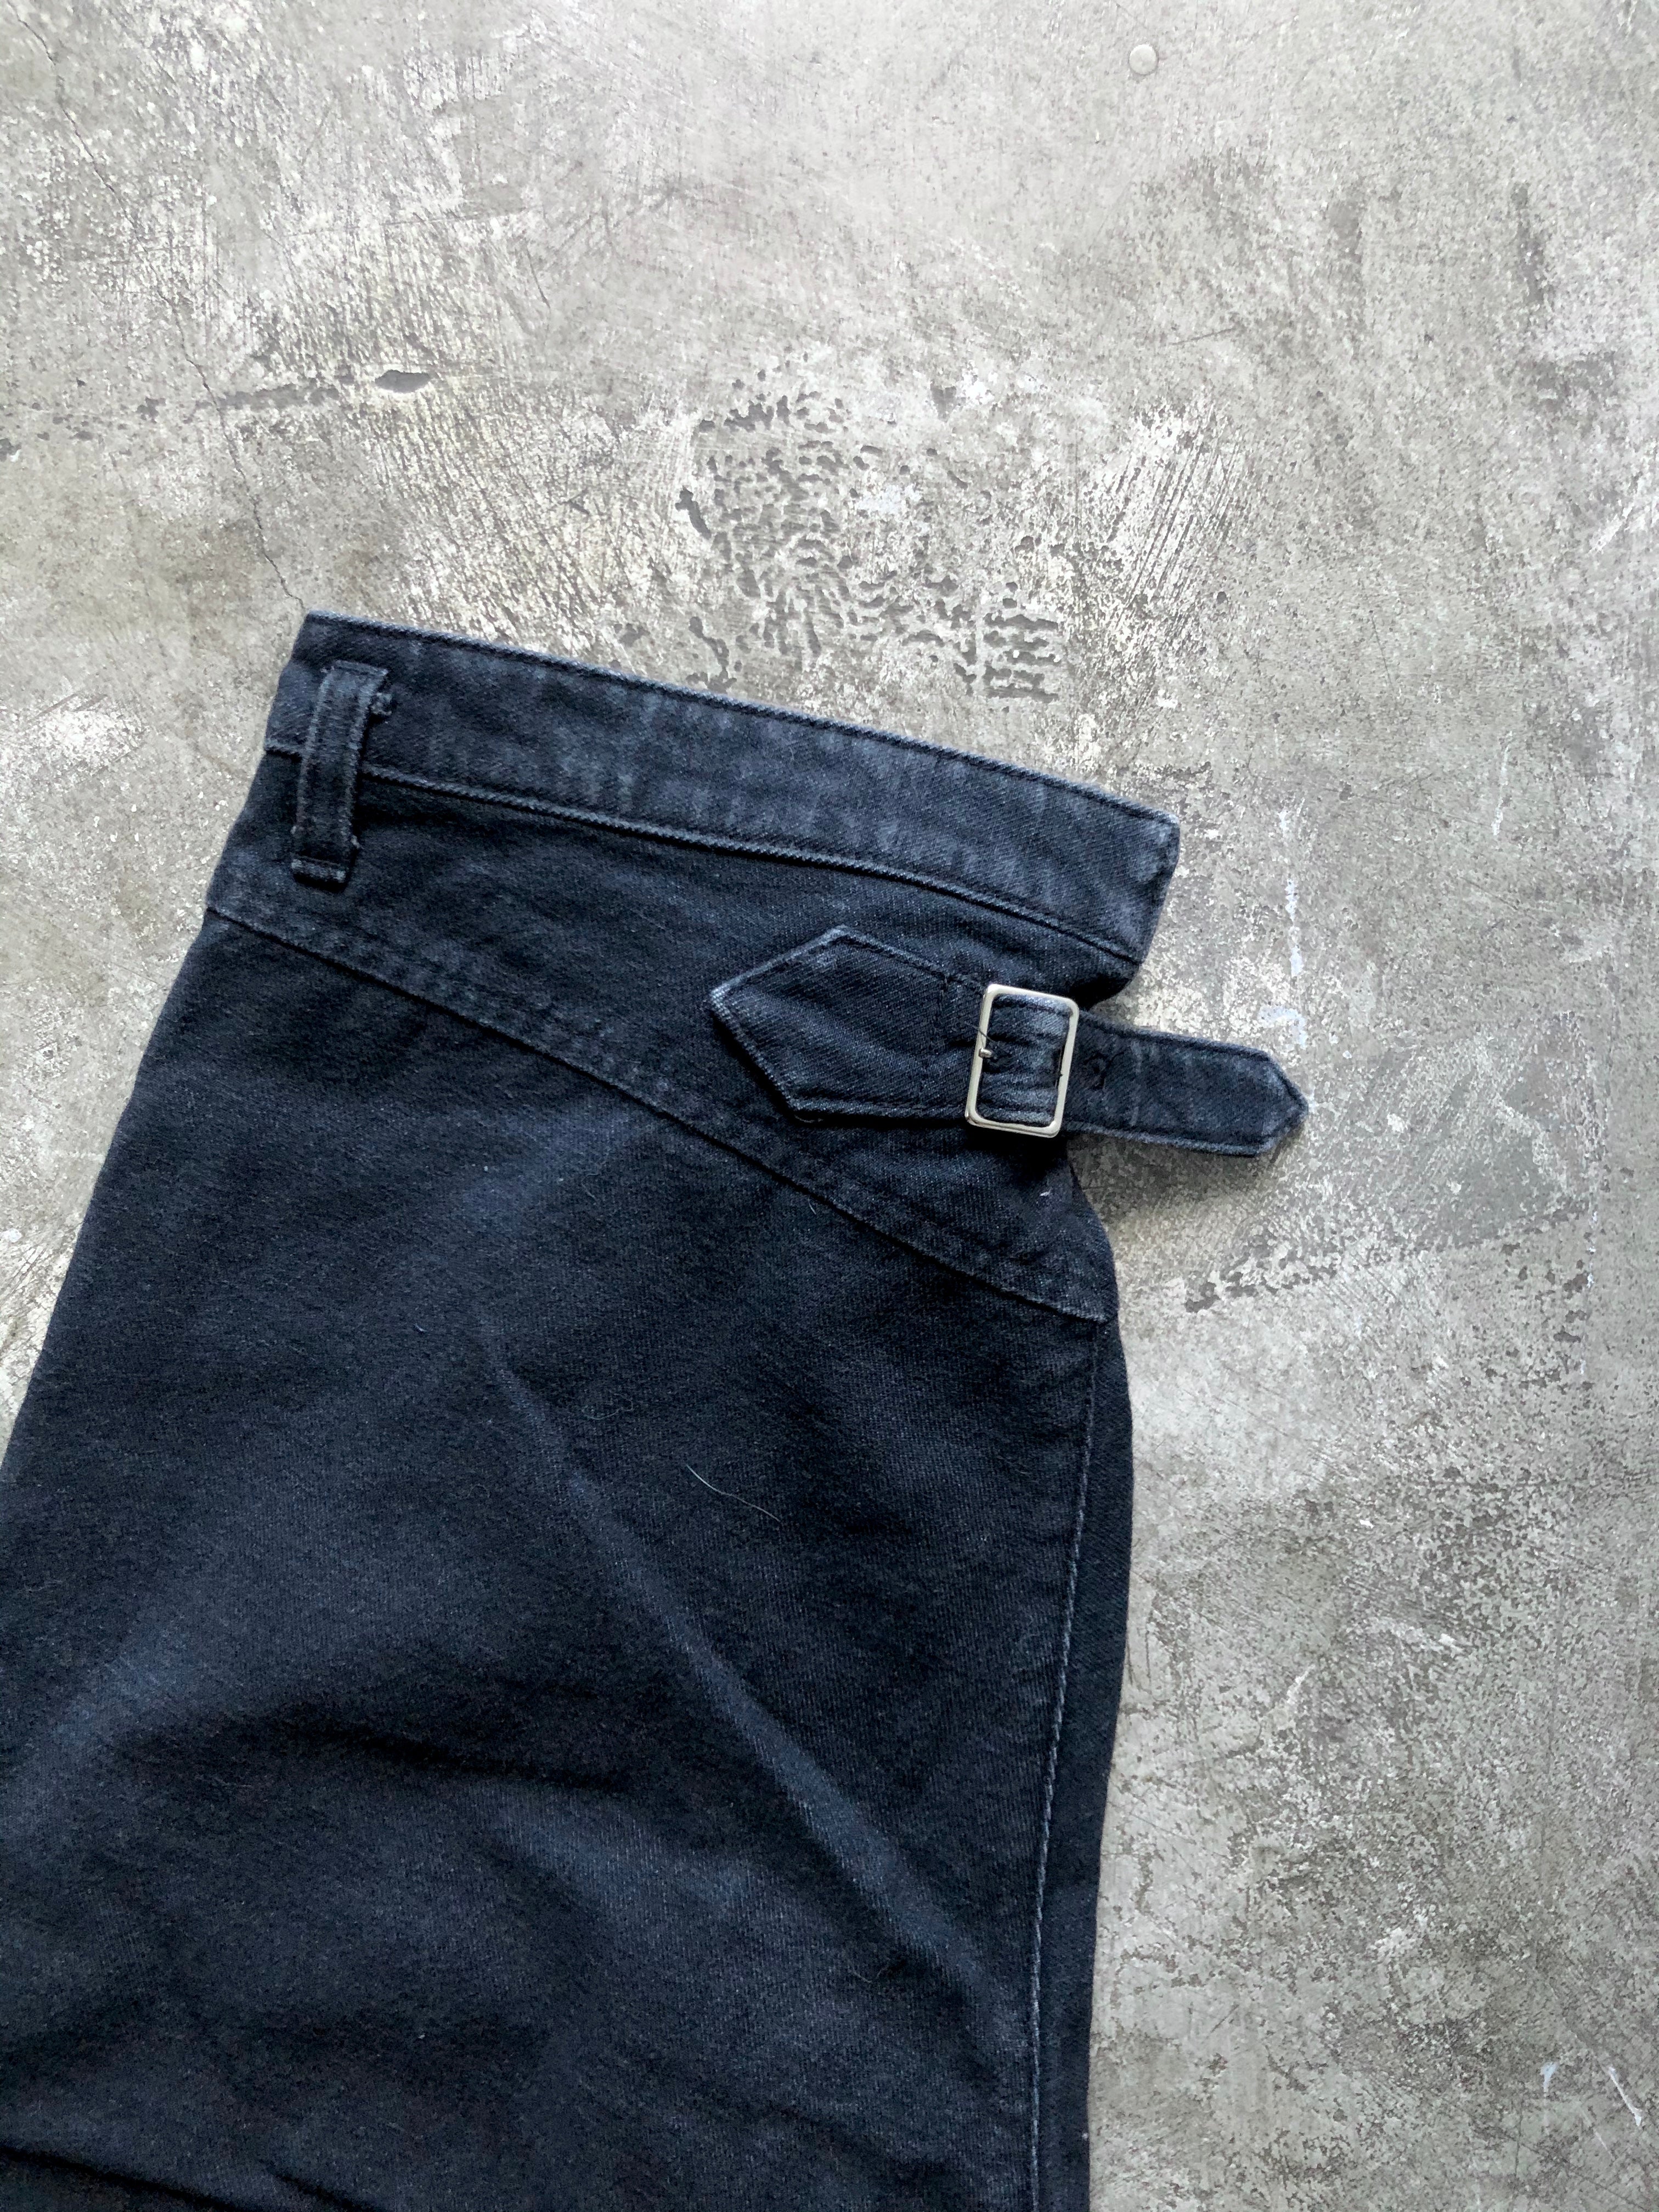 Tricot Comme des Garçons cotton dark gray pants